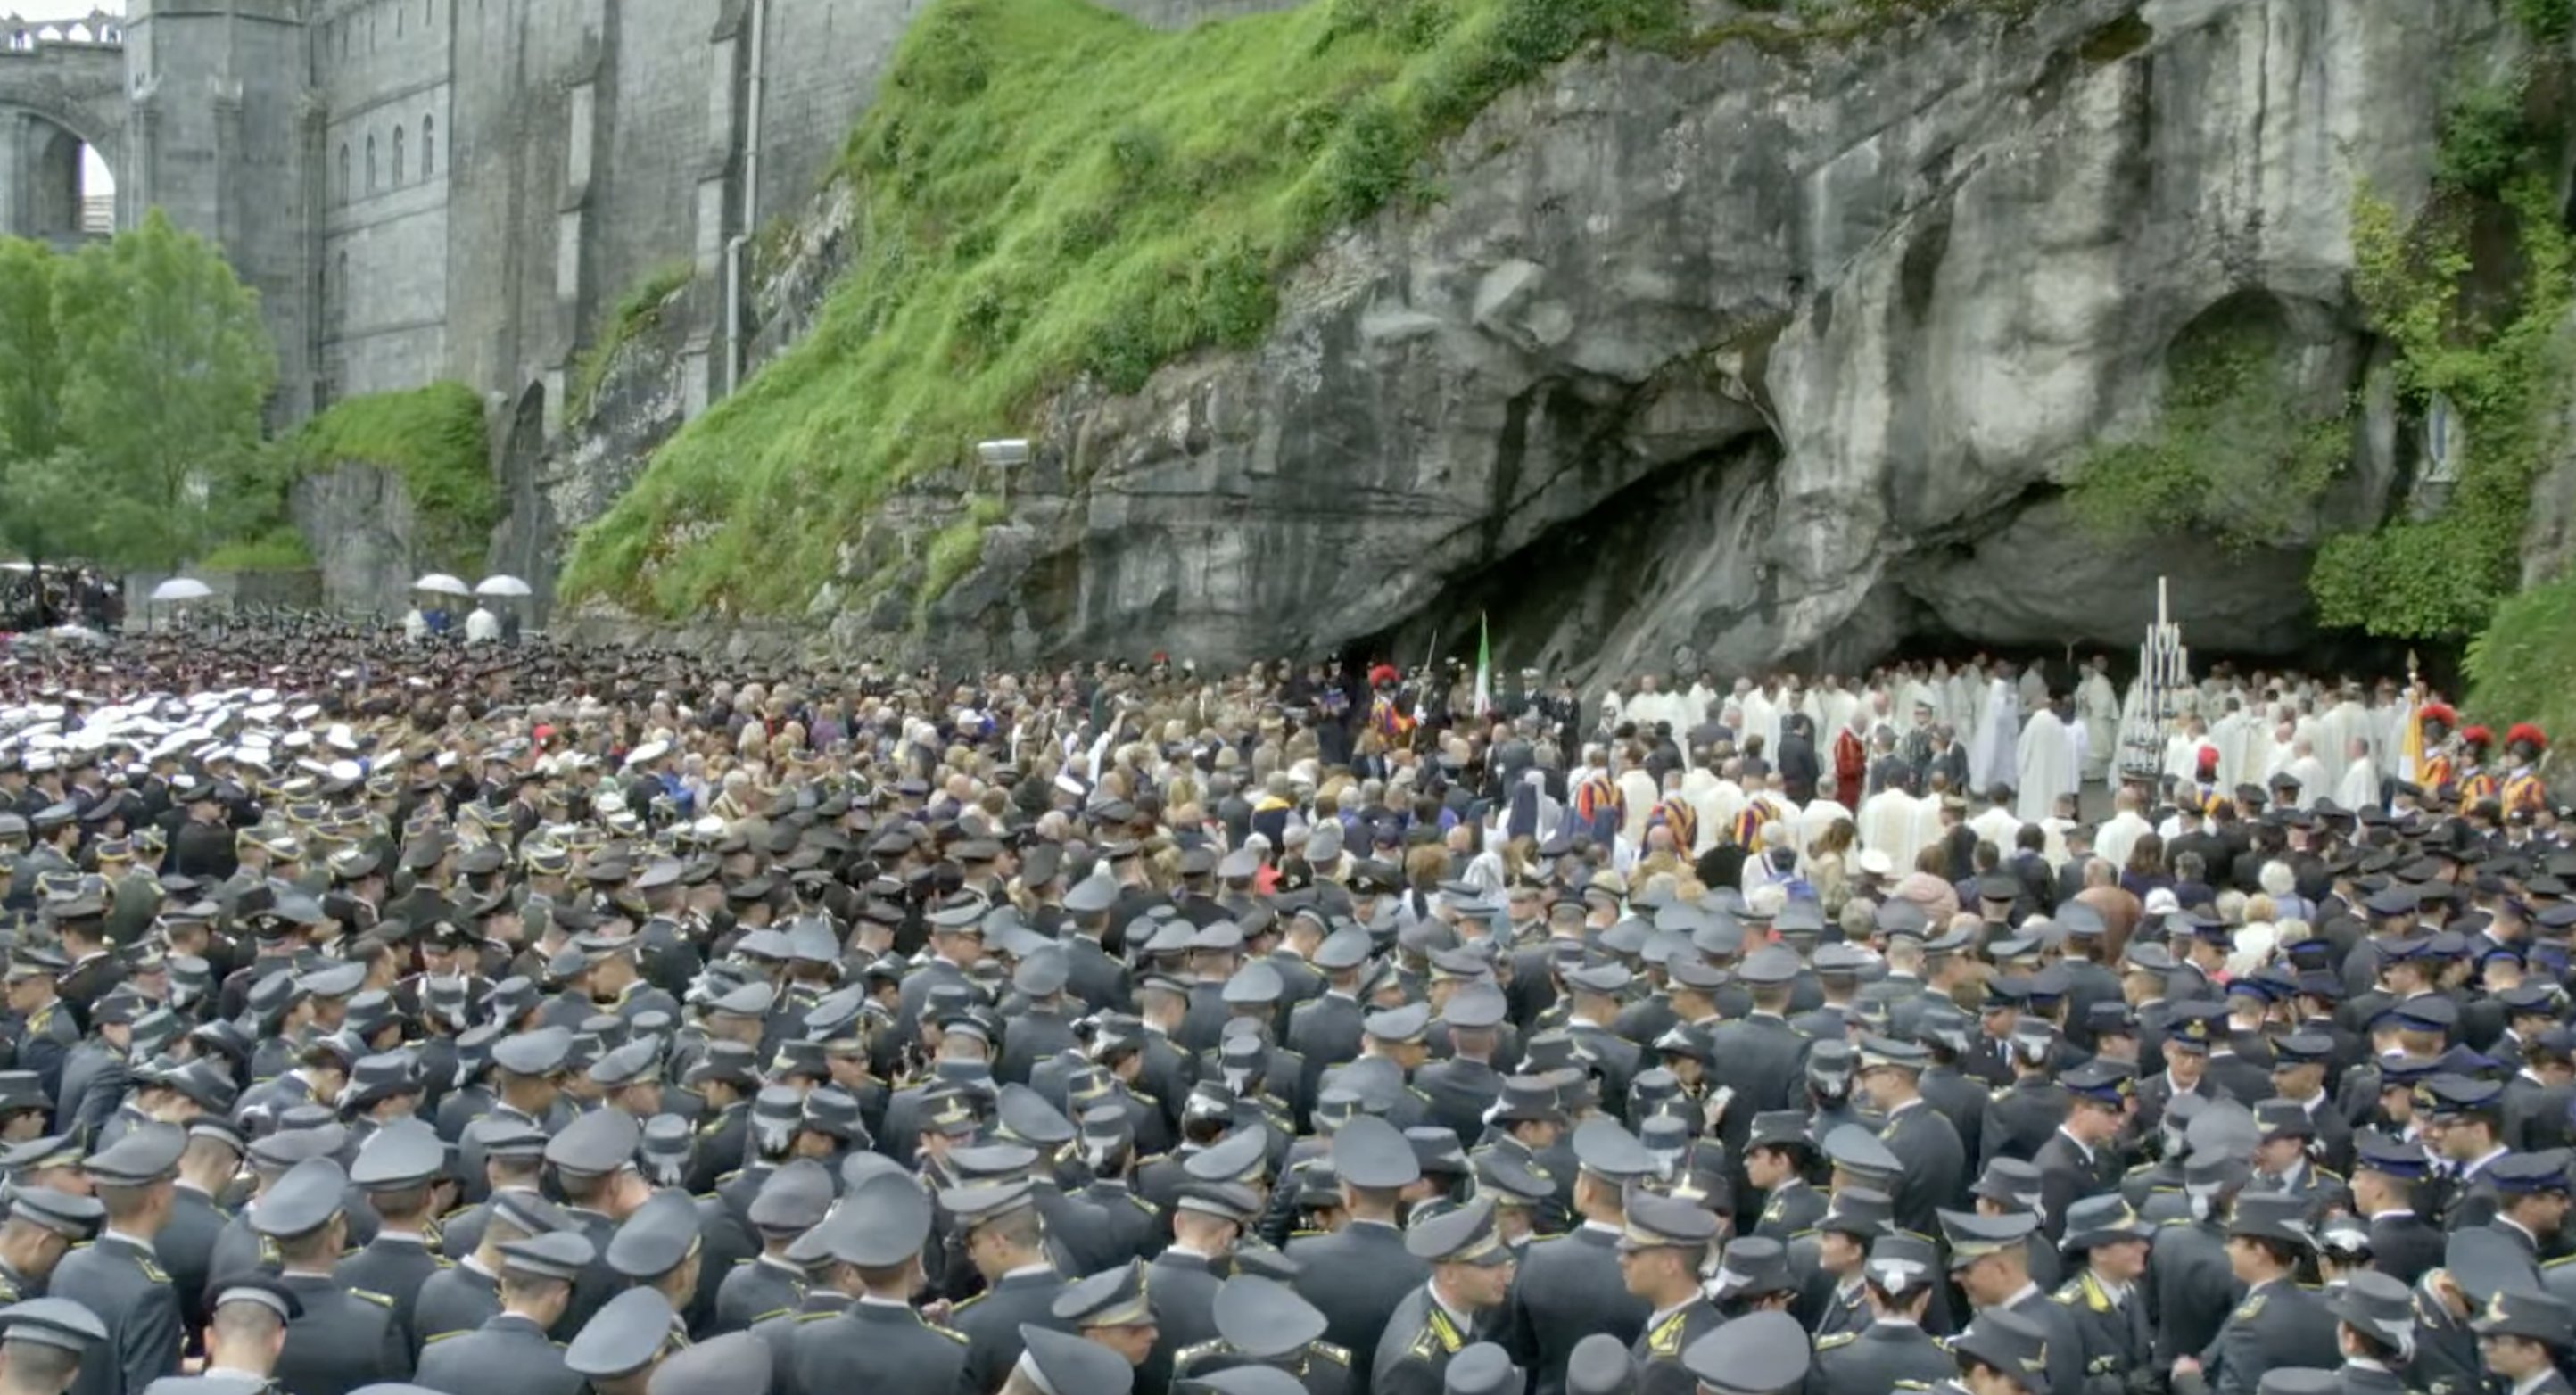 Italian military gather at Lourdes grotto